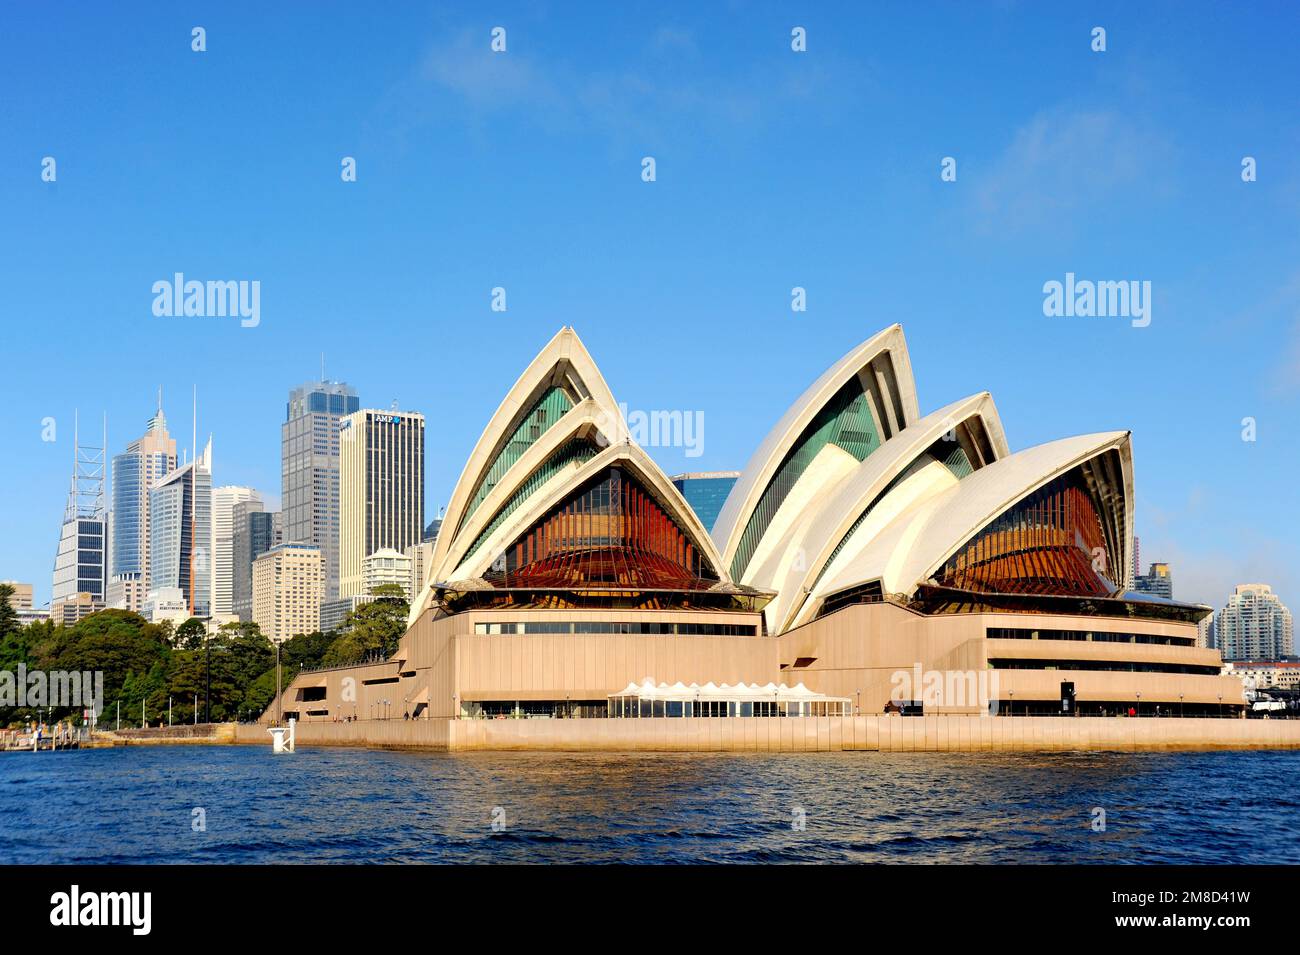 Il paesaggio urbano di Sydney con l'area del centro dietro il teatro dell'opera. Foto Stock